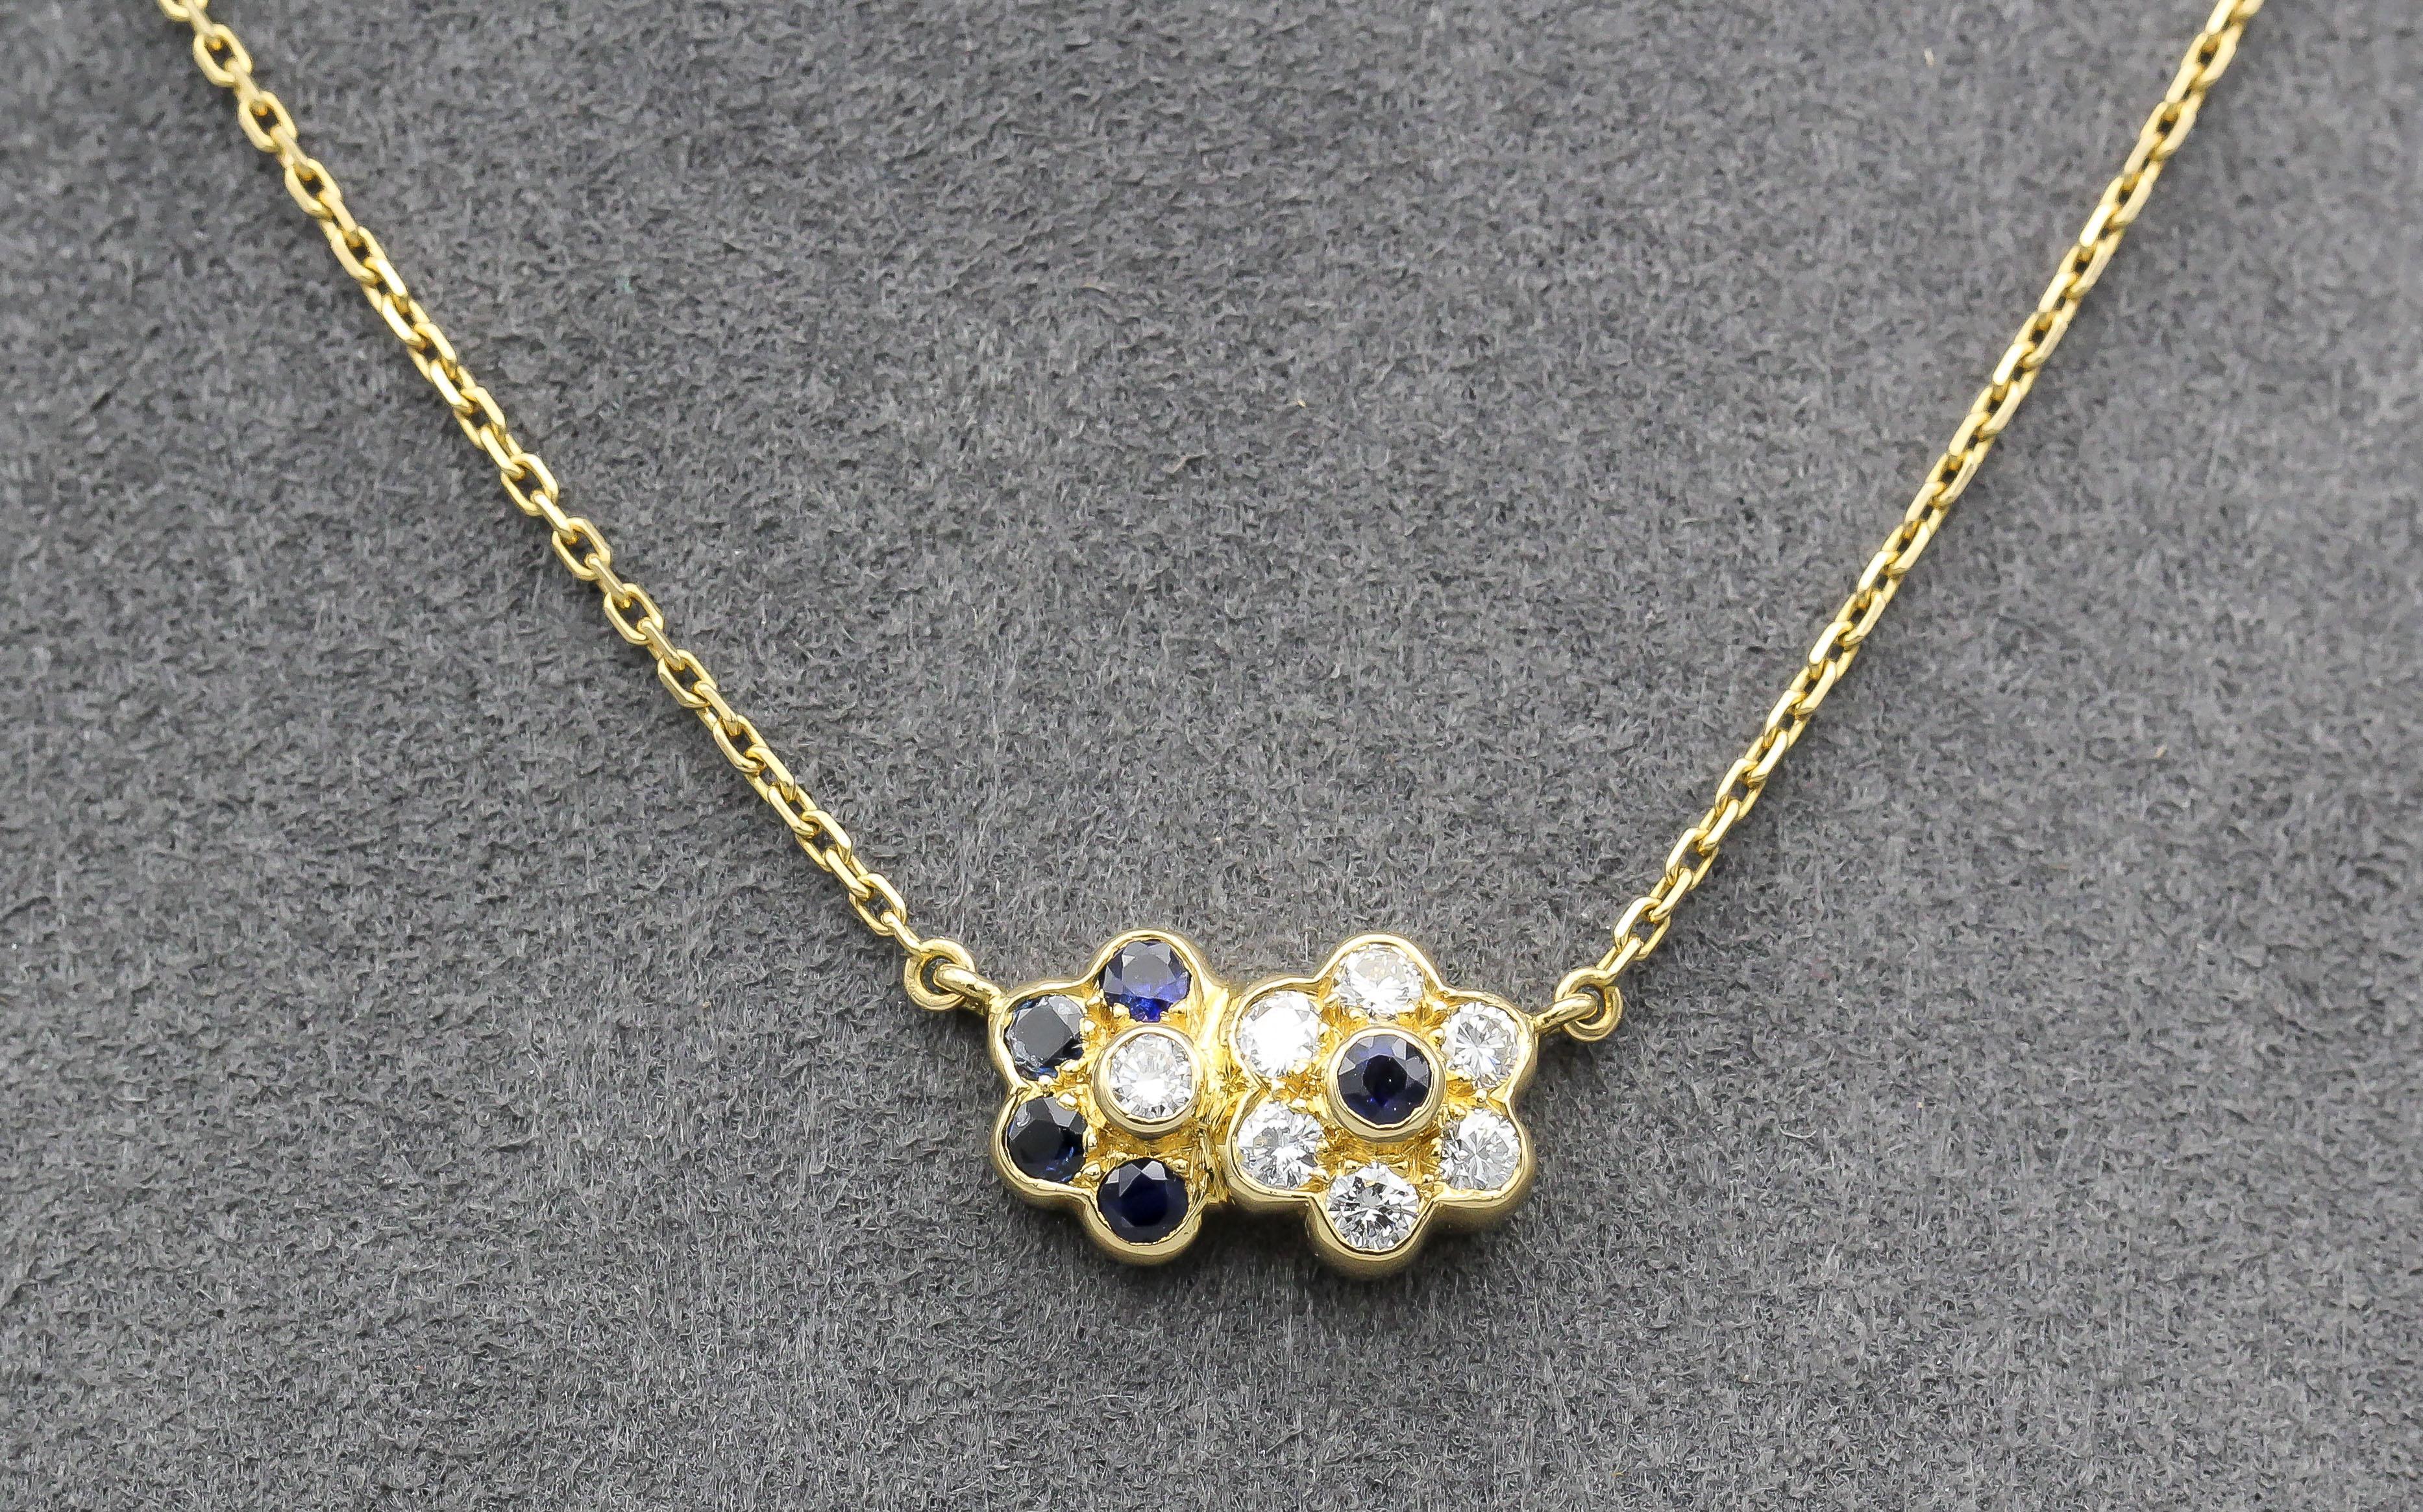 Voici le collier pendentif Van Cleef & Arpels en or jaune 18 carats à saphirs et diamants, un chef-d'œuvre de luxe et d'artisanat qui capture l'essence de l'élégance intemporelle. Ce collier exquis est conçu comme deux fleurs imbriquées, avec une